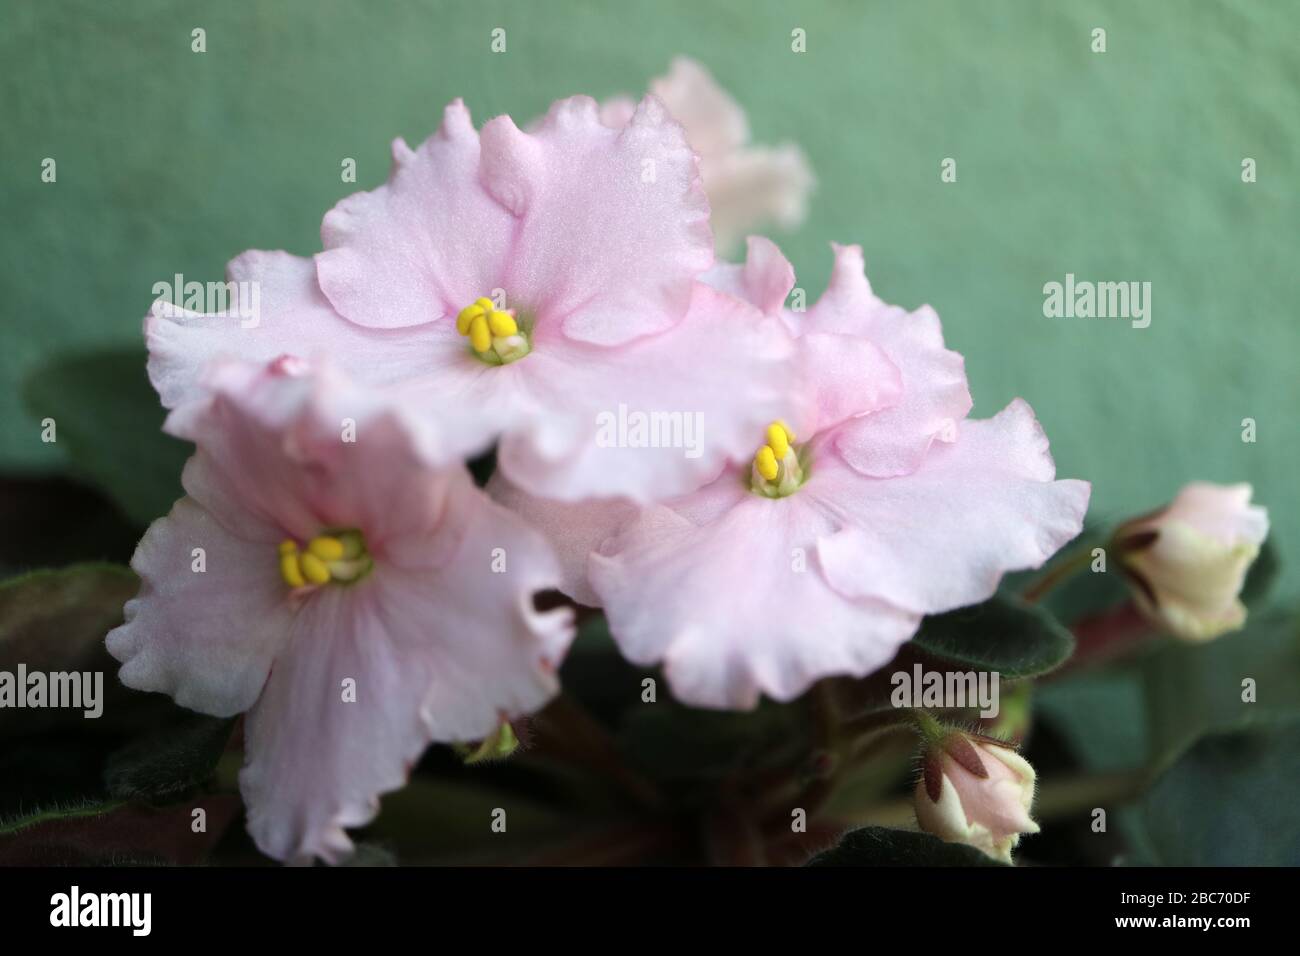 Violettes africaines roses avec fond de mur vert, fleurs roses de printemps avec feuilles vertes, violettes avec pétales doux et étamines jaunes, fleurs macro, stock Banque D'Images